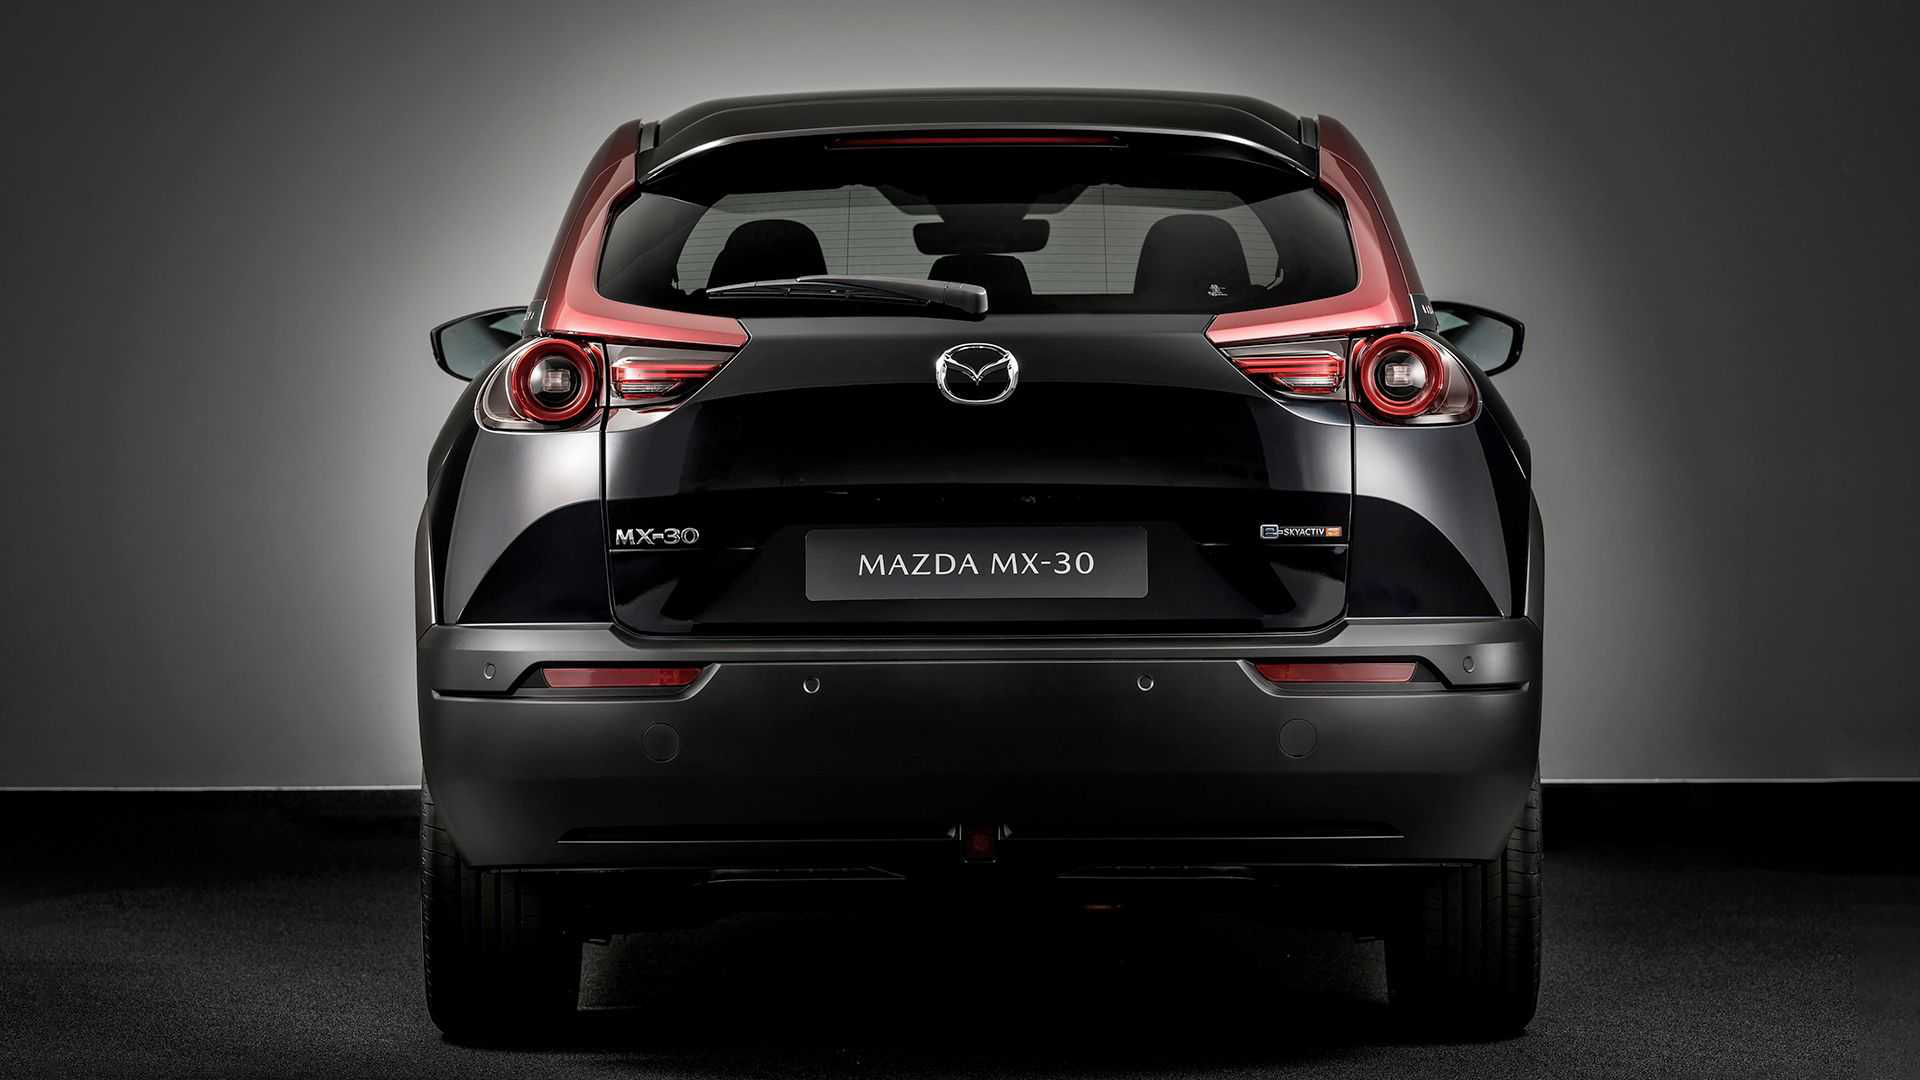 Mazda MX-30 - SUV nhỏ tận dụng động cơ xoay, chạy hơn 600km mới phải sạc - Ảnh 4.